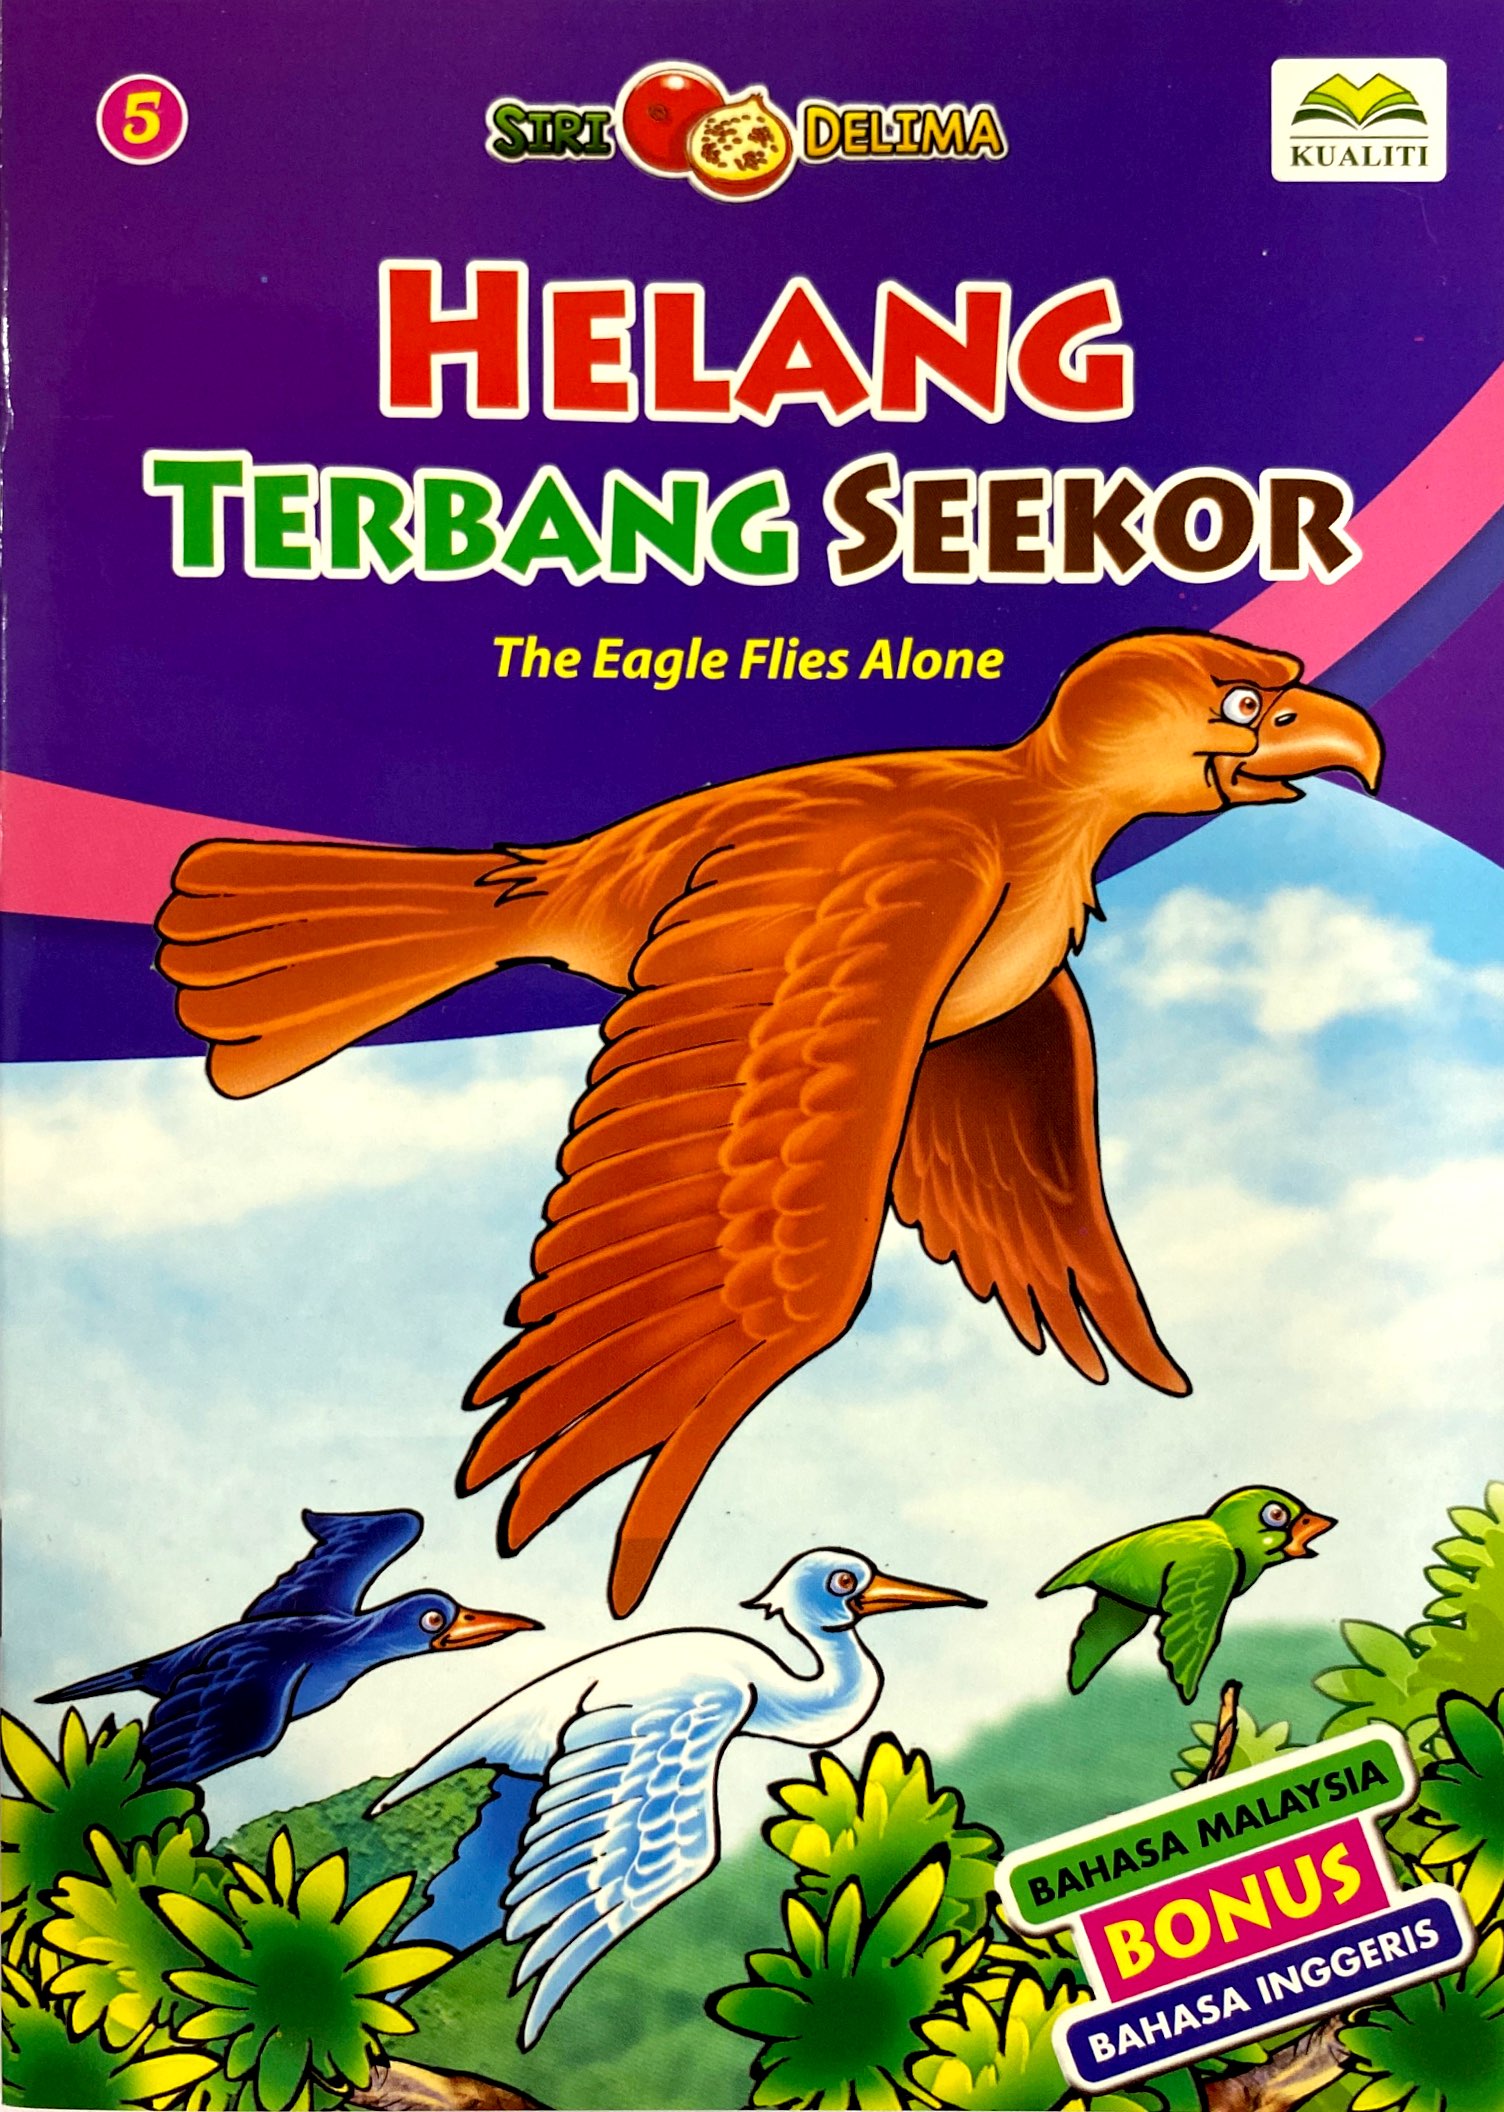 Buku Cerita Siri DELIMA HELANG TERBANG SEEKOR (BM/BI) - No.1 Online